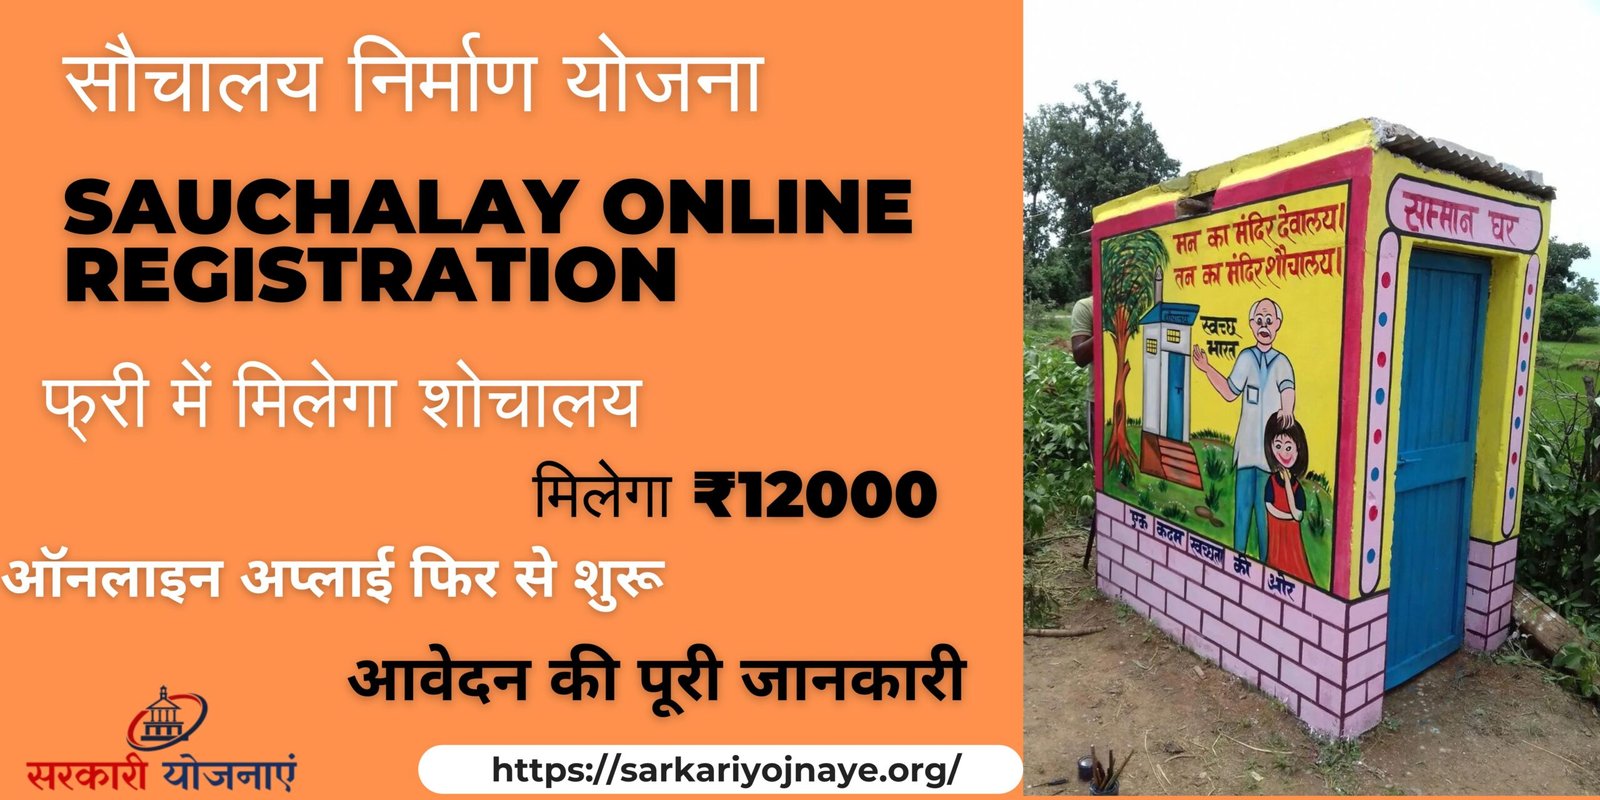 Sauchalay Online Registration